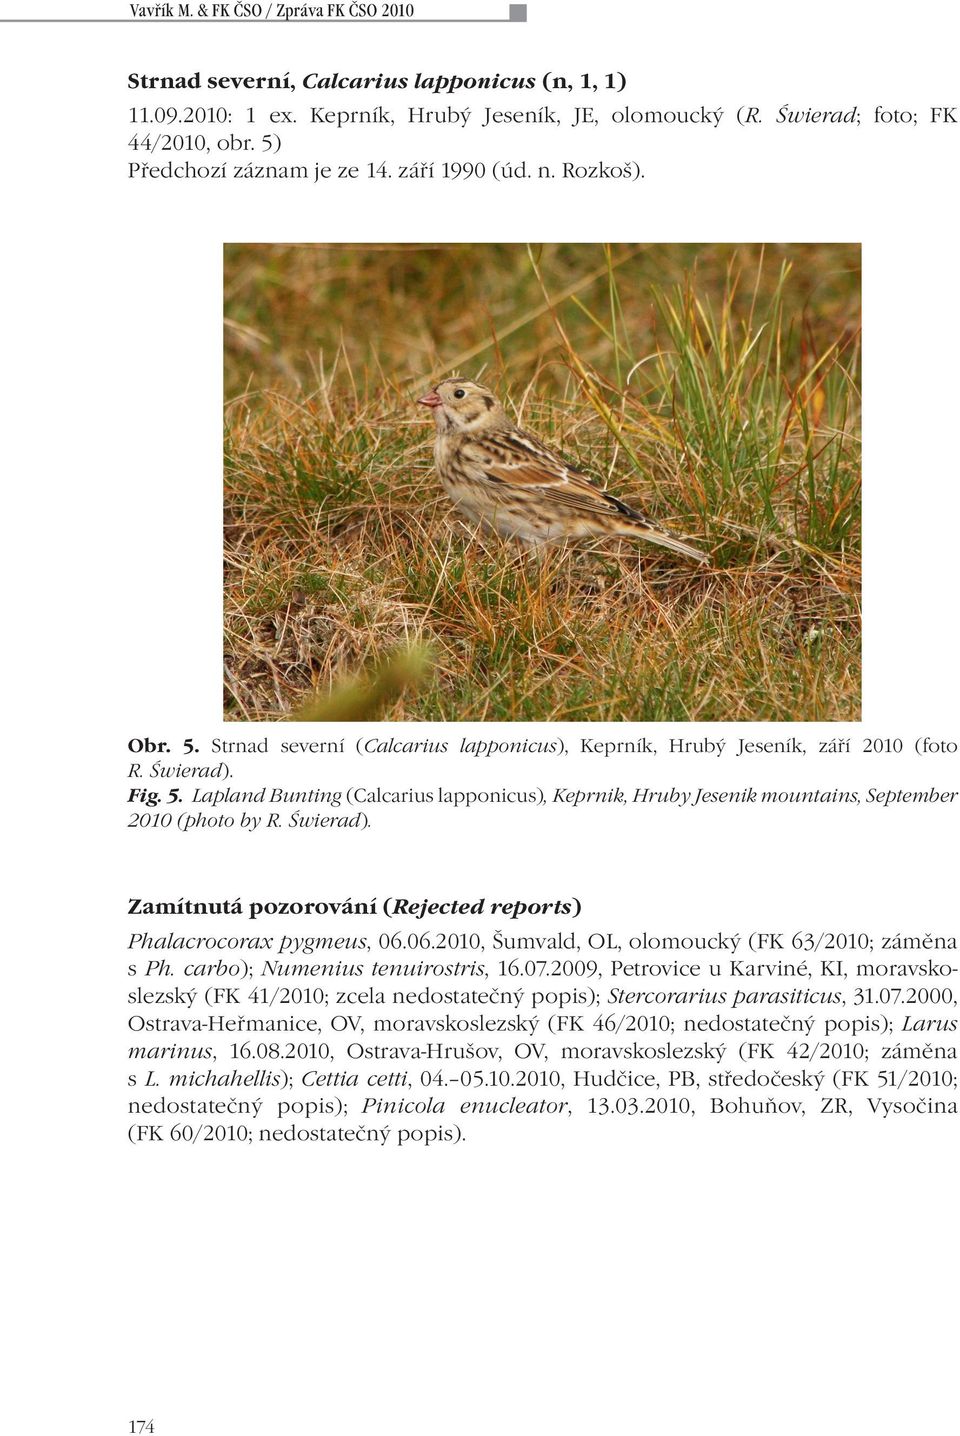 Świerad). Zamítnutá pozorování (Rejected reports) Phalacrocorax pygmeus, 06.06.2010, Šumvald, OL, olomoucký (FK 63/2010; záměna s Ph. carbo); Numenius tenuirostris, 16.07.